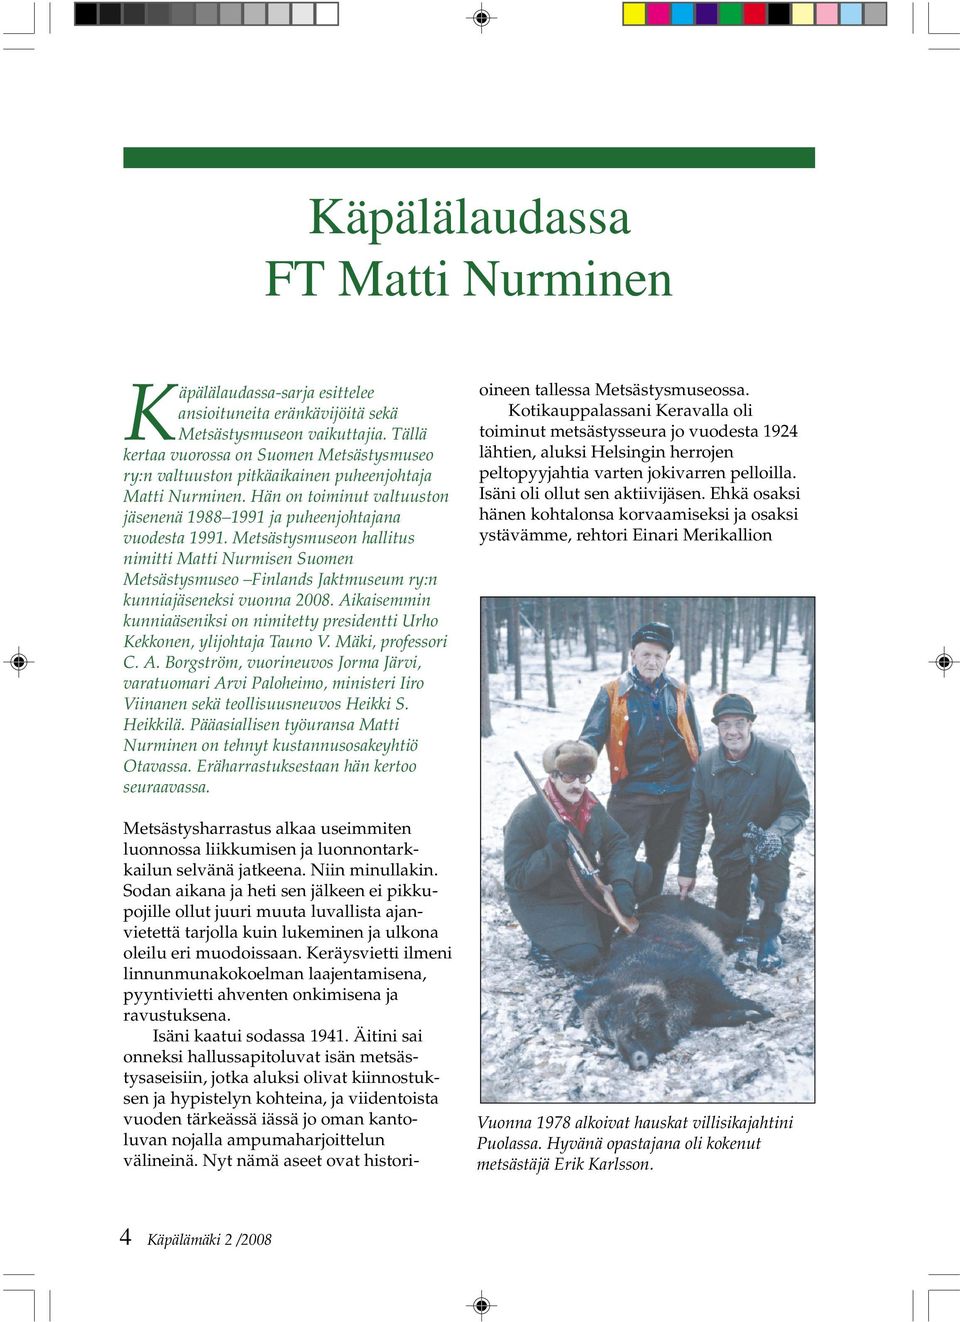 Metsästysmuseon hallitus nimitti Matti Nurmisen Suomen Metsästysmuseo Finlands Jaktmuseum ry:n kunniajäseneksi vuonna 2008.